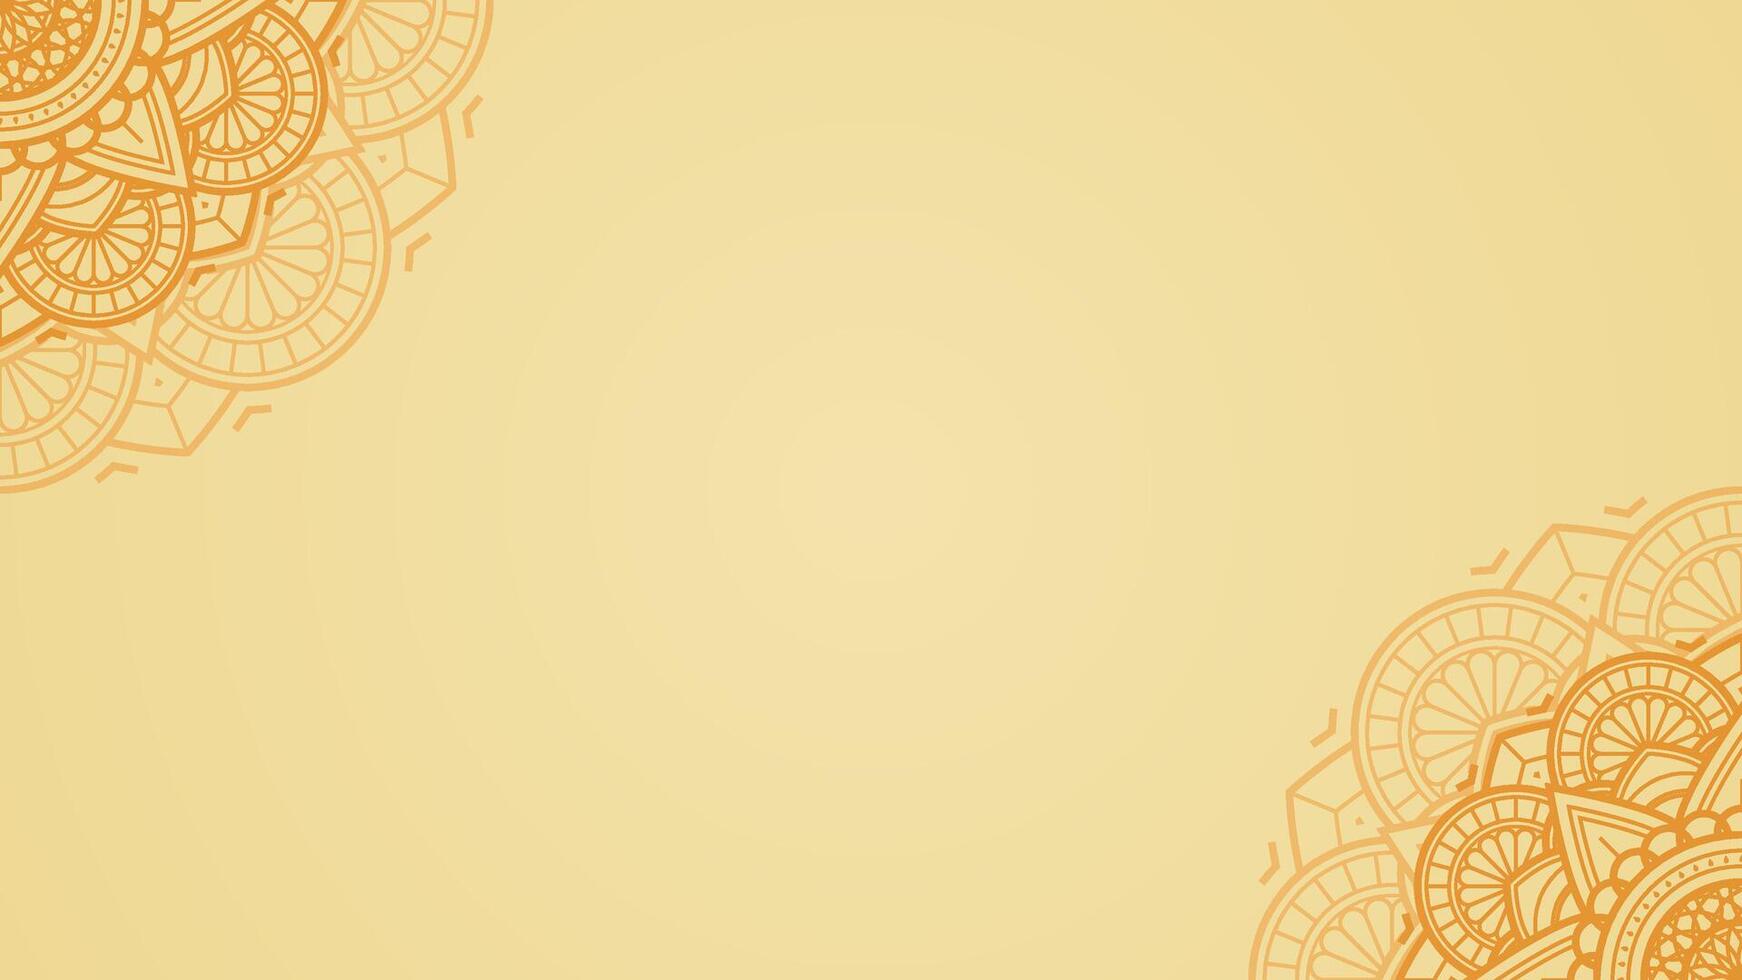 luminoso ligero amarillo oro azafrán blanco horizontal vector antecedentes adornado con agrios mandala obra de arte